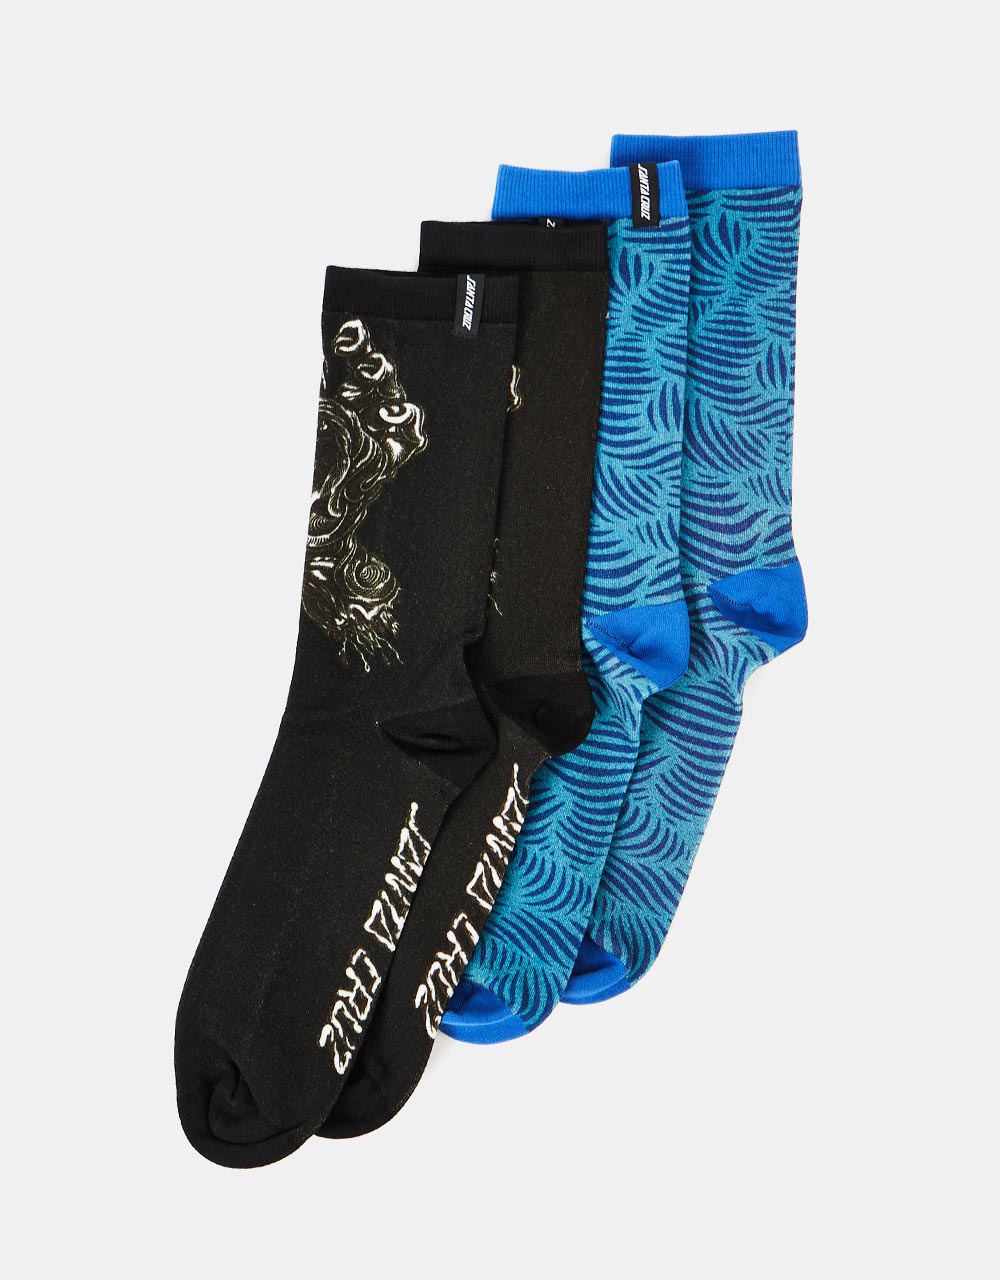 Santa Cruz Alive Hand 2 Pack Socks - Multi Colour/Black